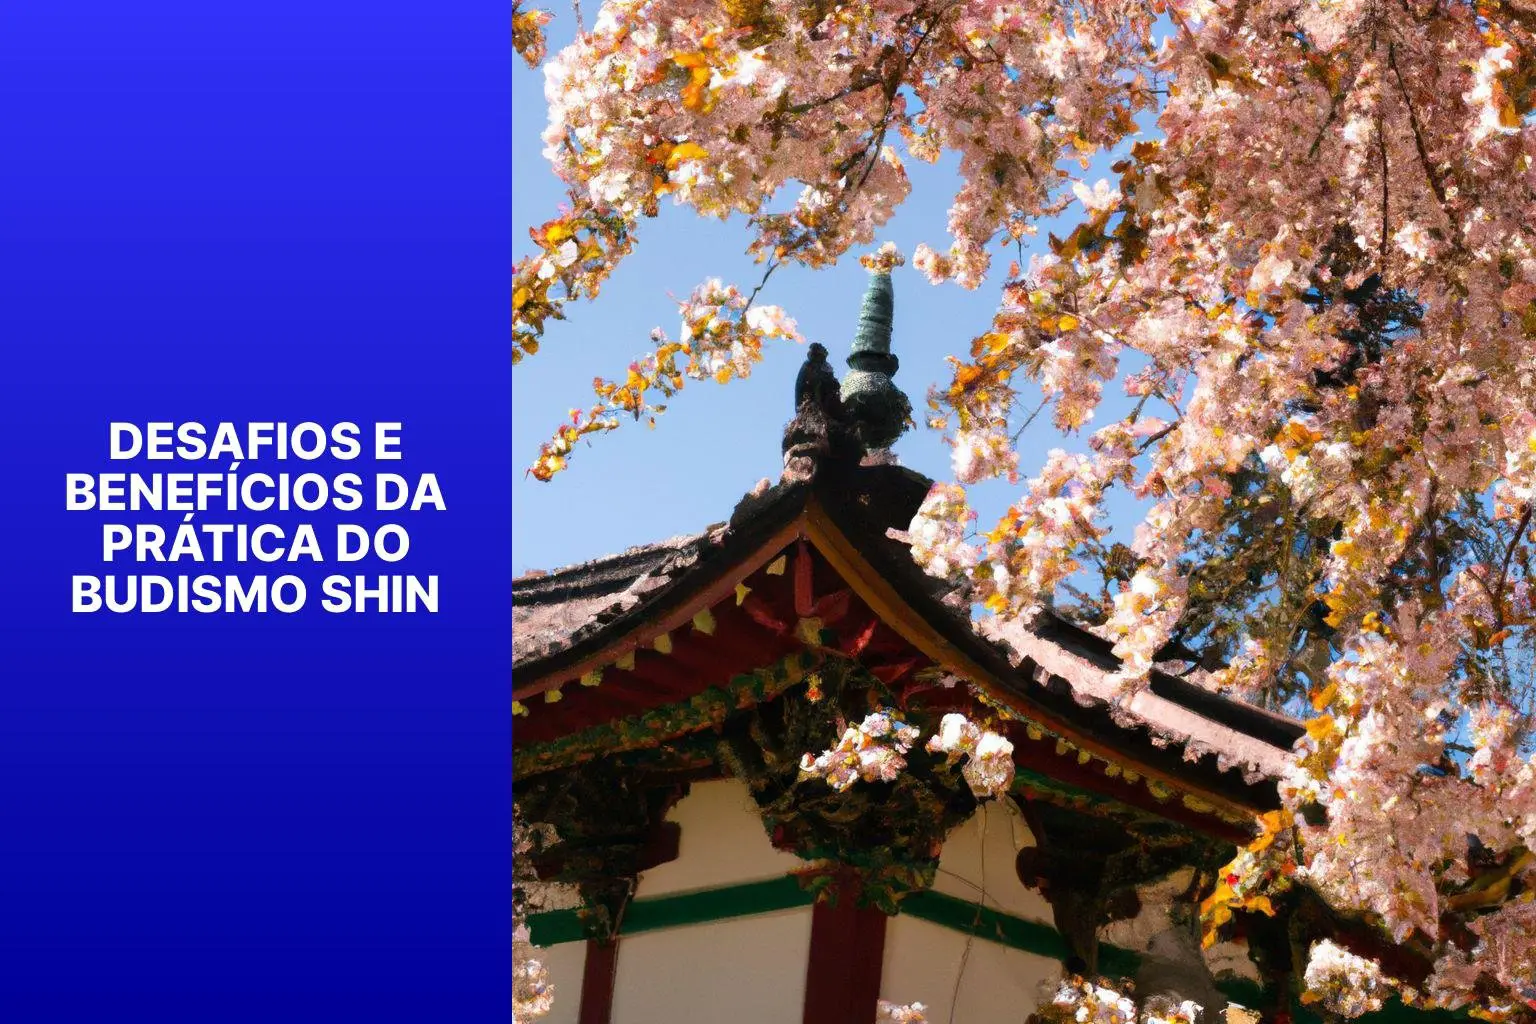 Desafios e Benefícios da Prática do Budismo Shin - Budismo Shin 